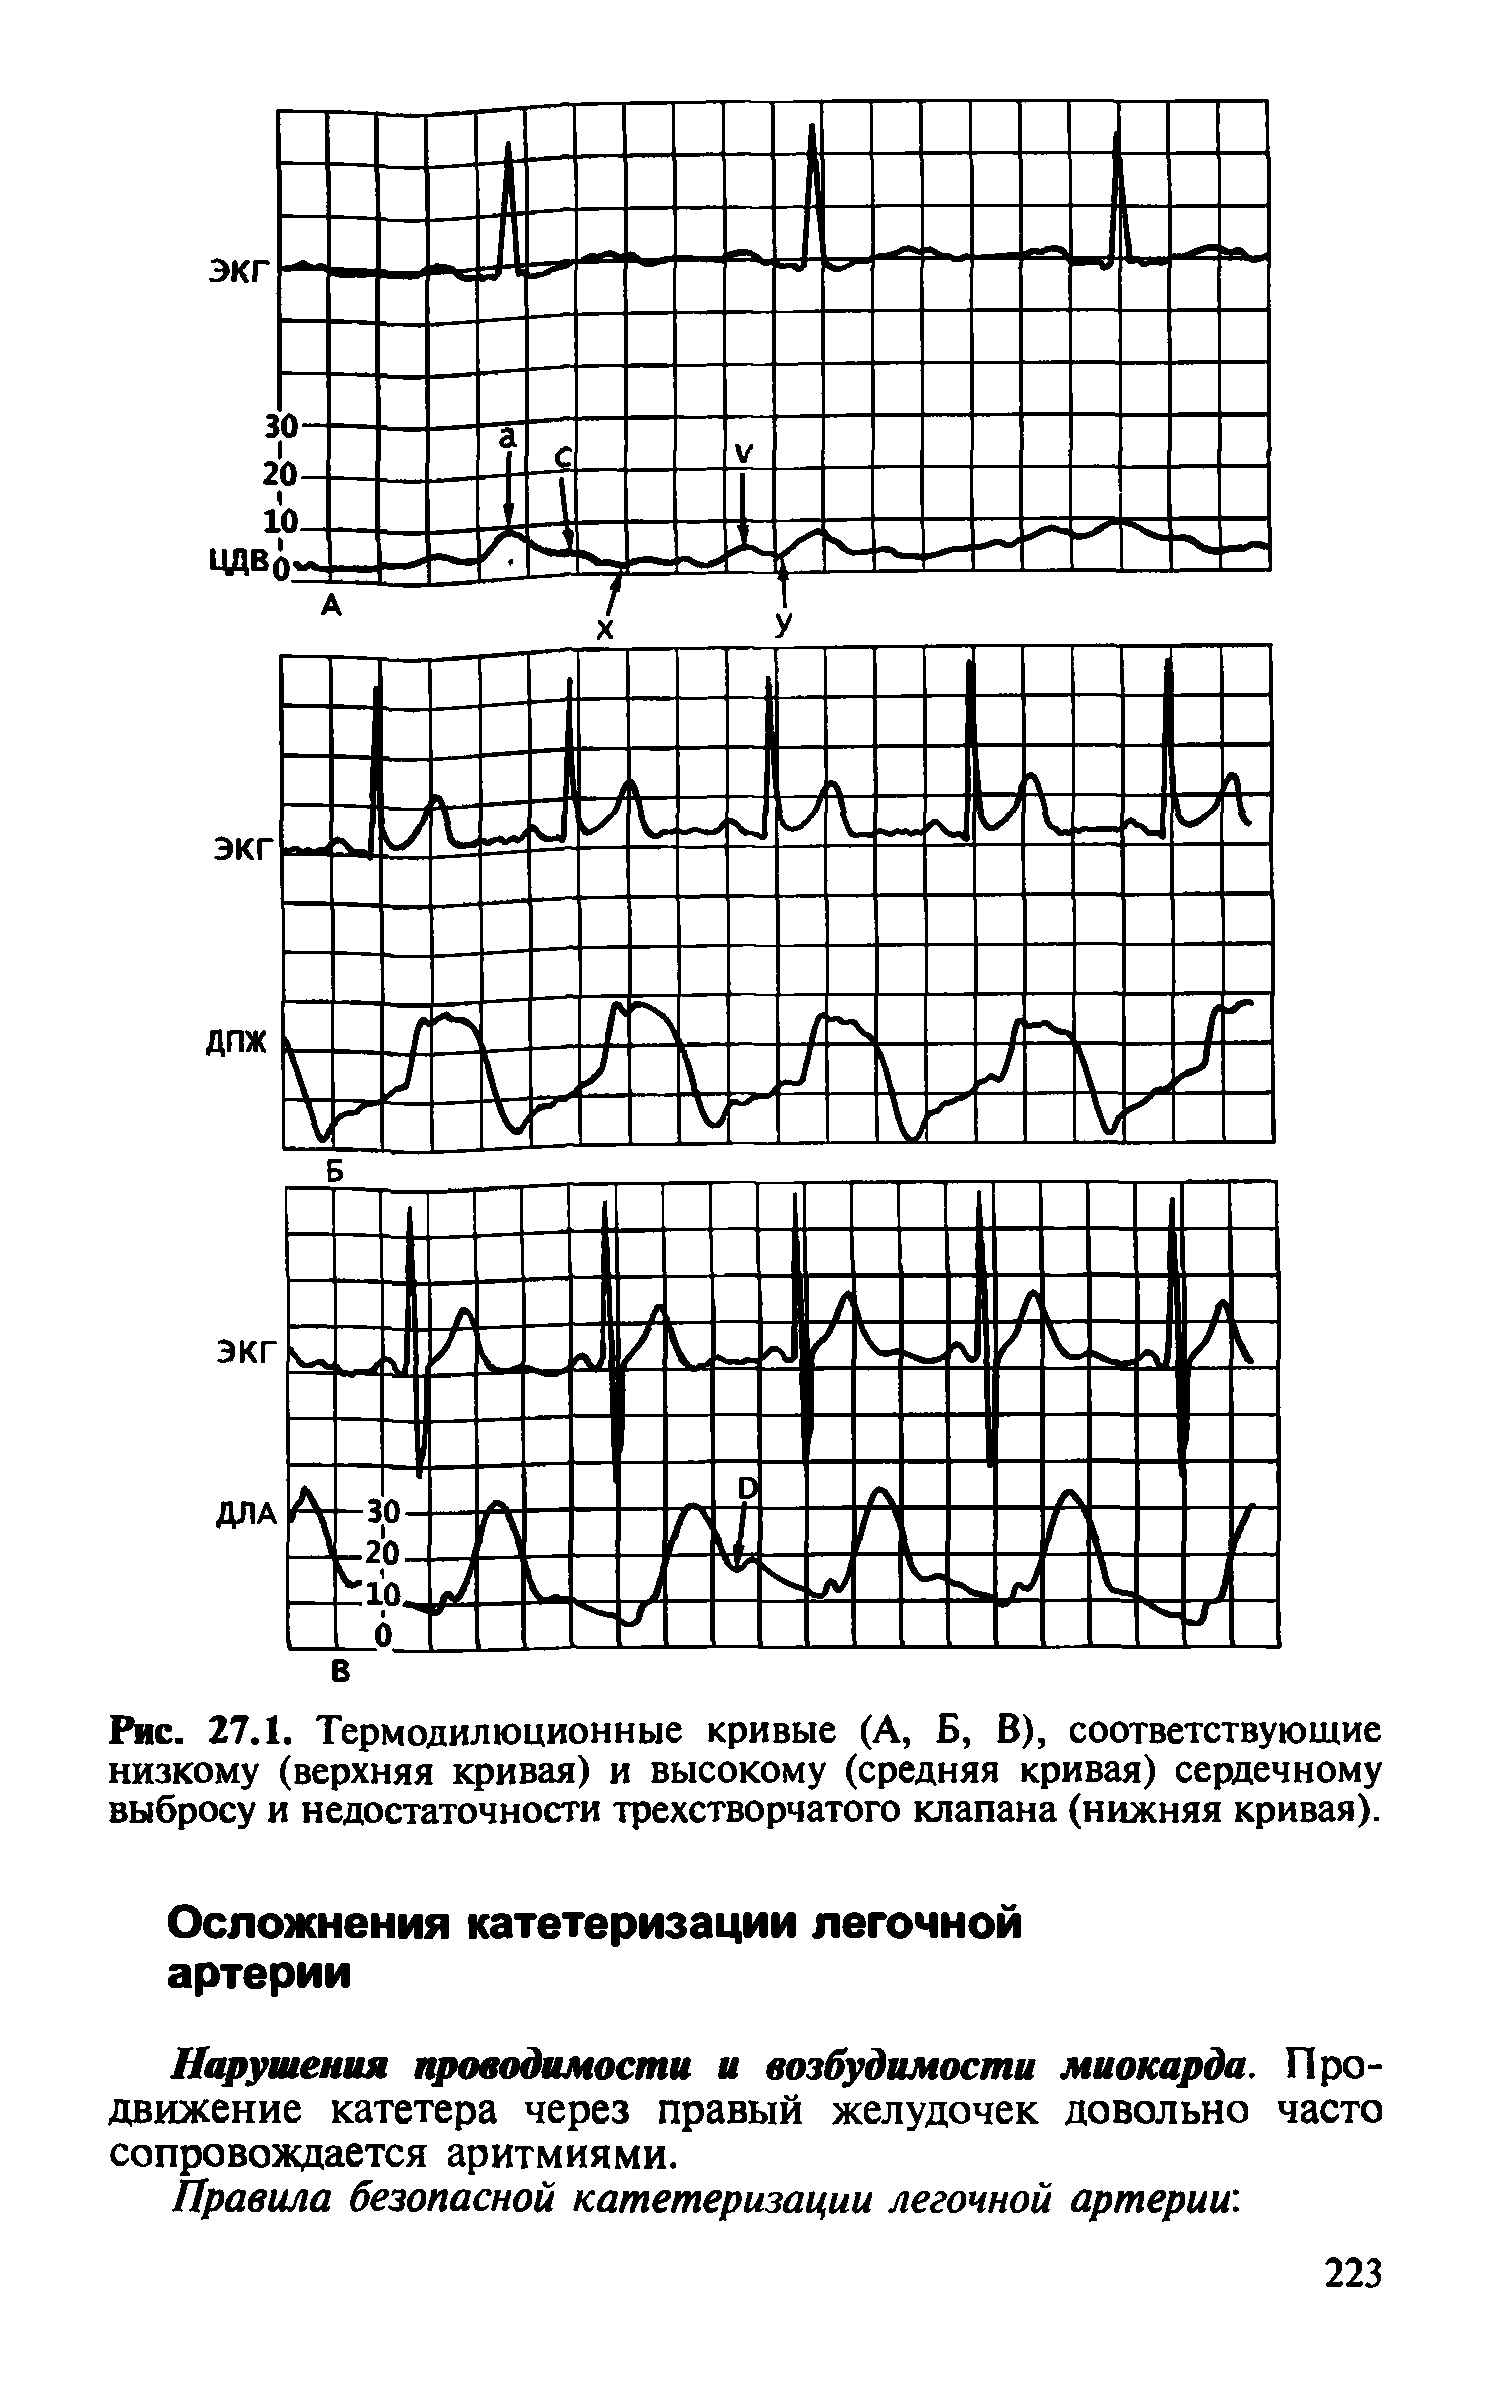 Рис. 27.1. Термодилюционные кривые (А, Б, В), соответствующие низкому (верхняя кривая) и высокому (средняя кривая) сердечному выбросу и недостаточности трехстворчатого клапана (нижняя кривая).